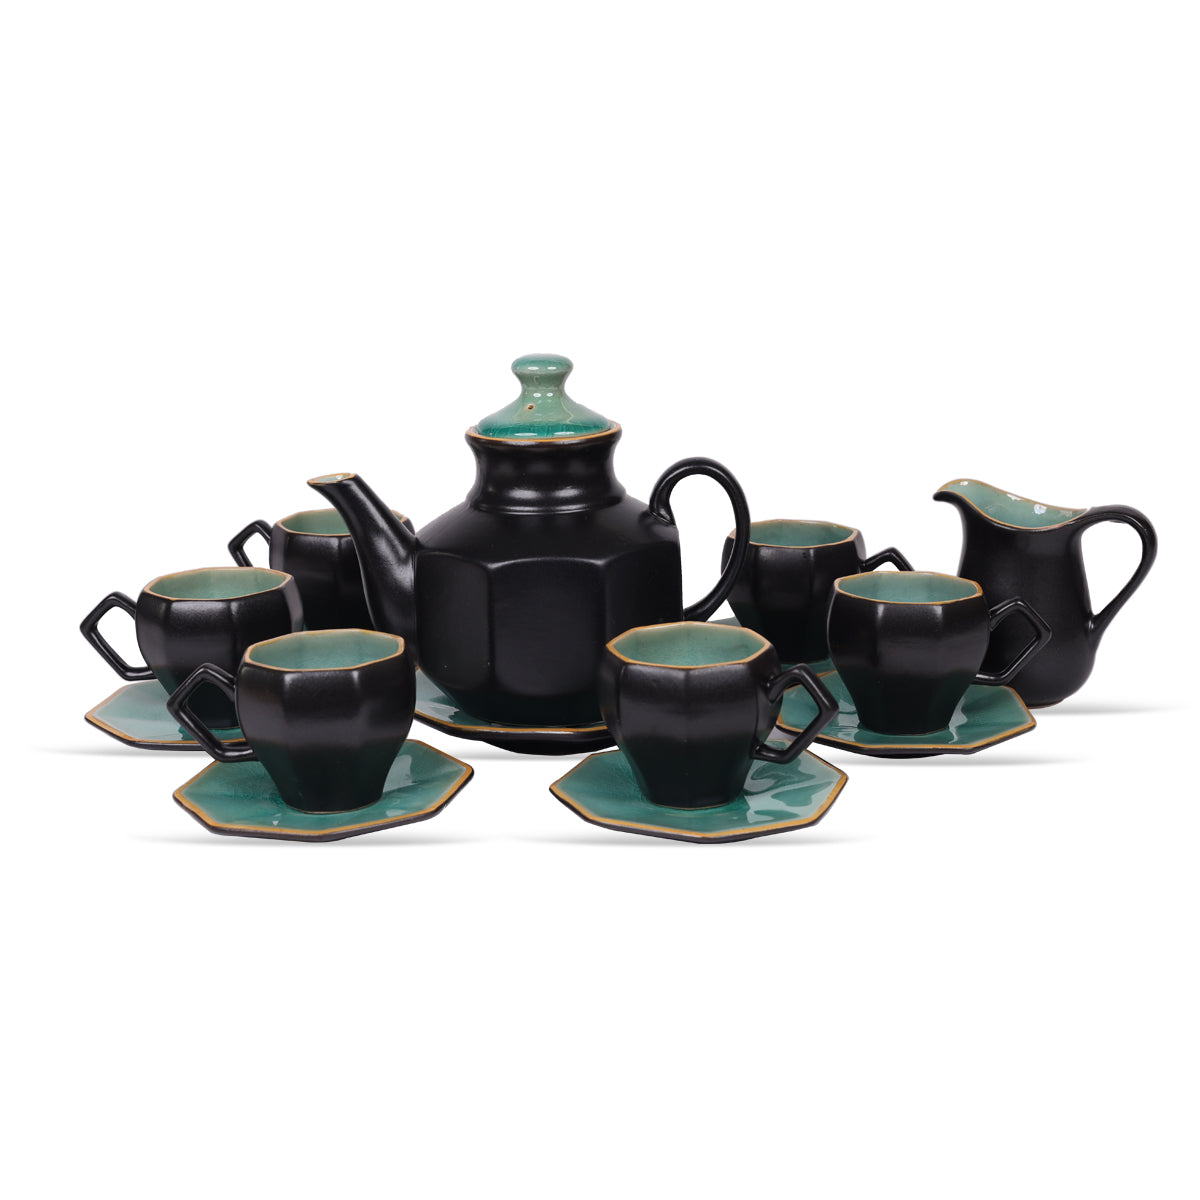 Ornate Black and Teal Tea Set